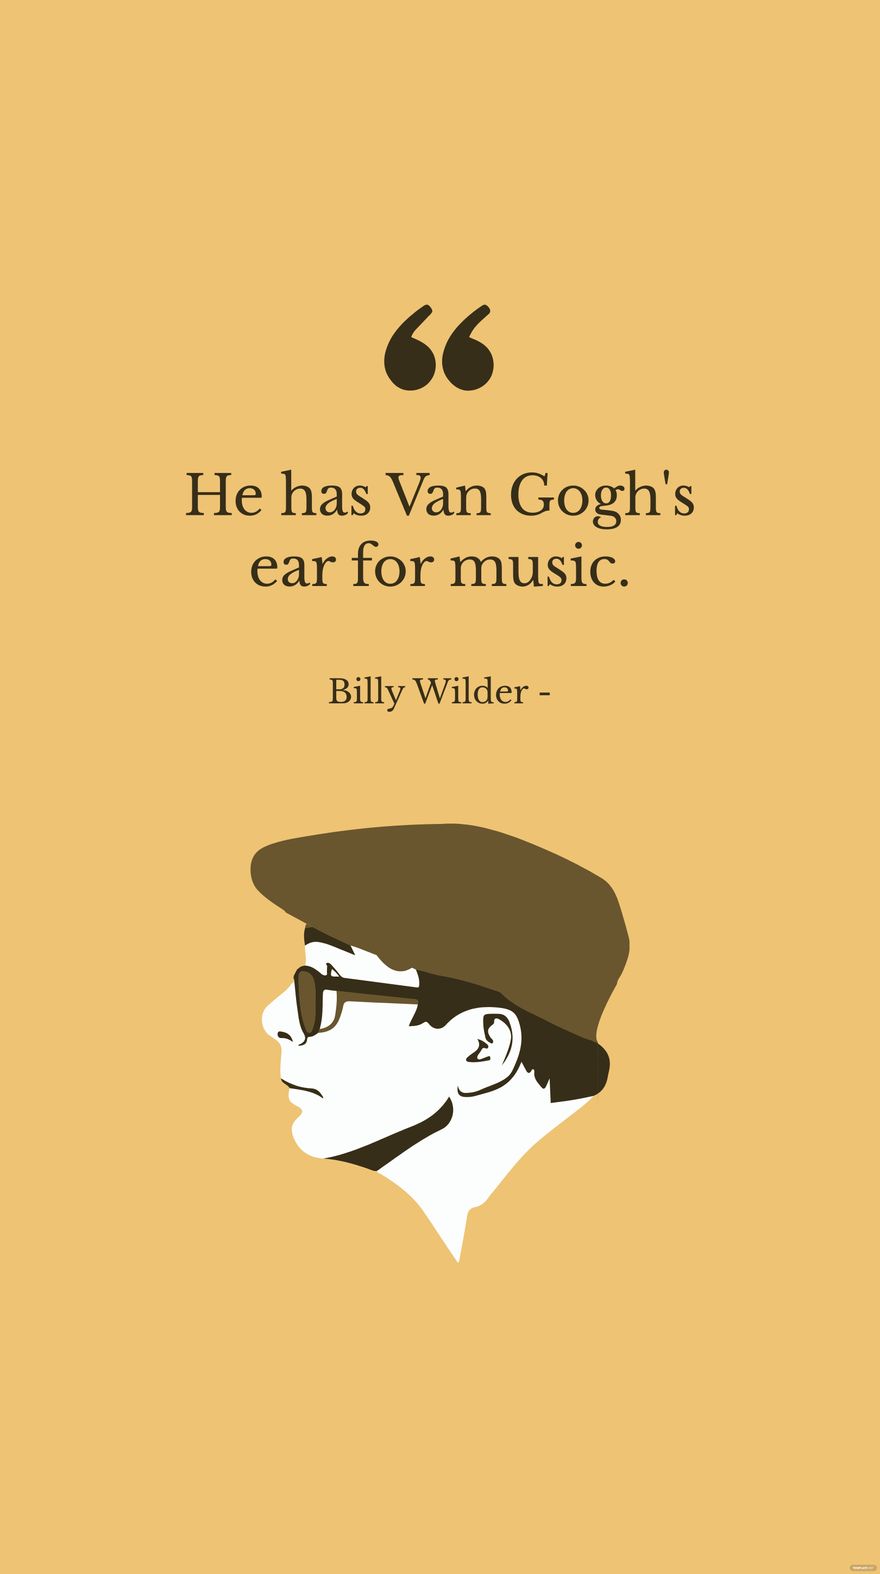 Free Billy Wilder - He has Van Gogh's ear for music. in JPG